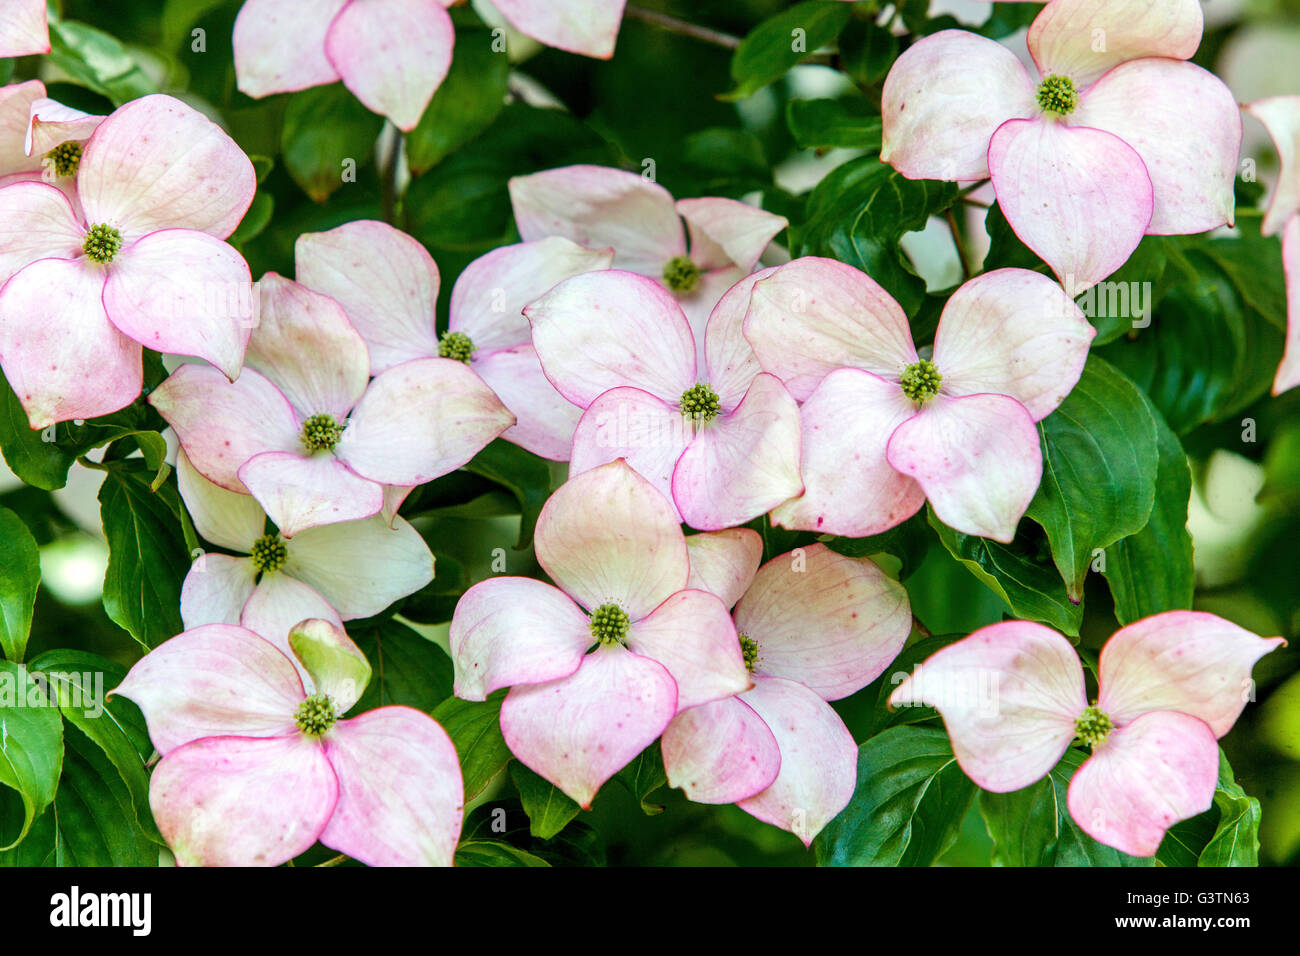 Dogwood, Cornus Kousa 'Satomi', pink petals Stock Photo